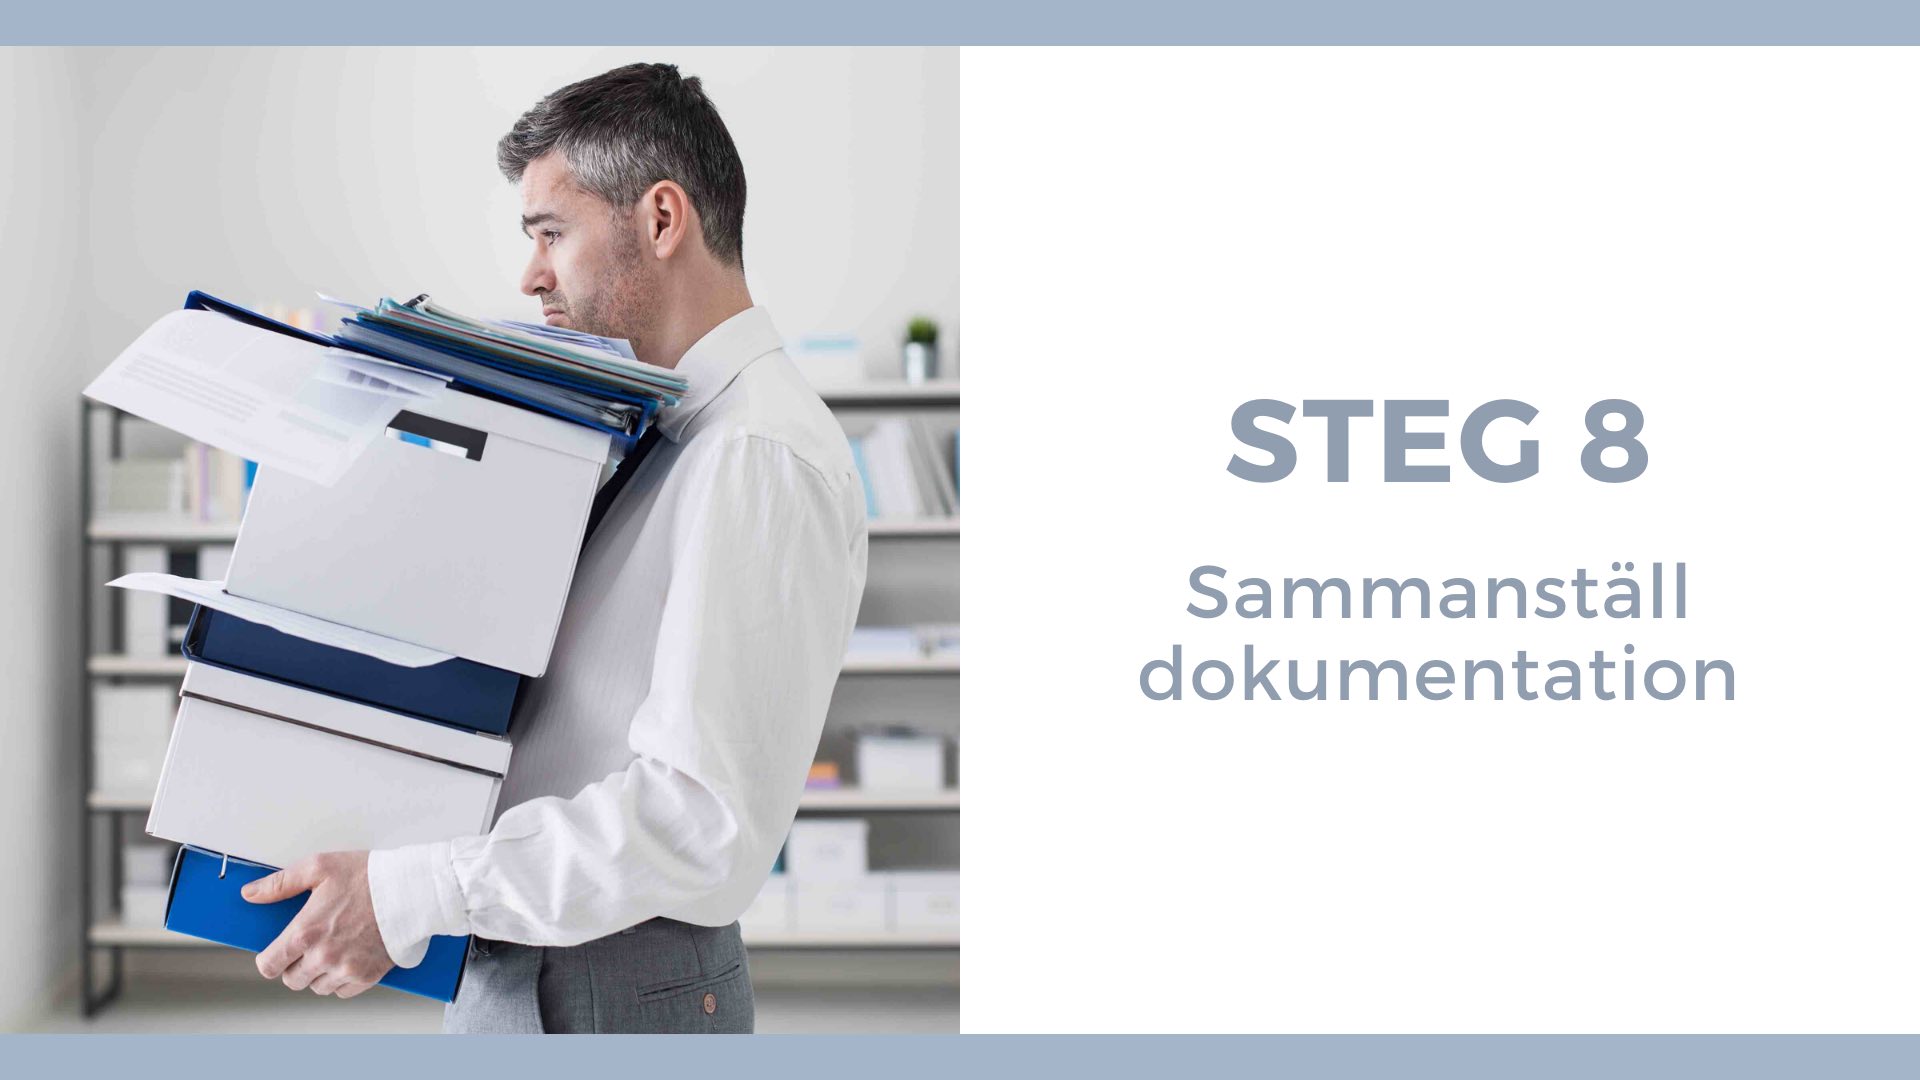 Steg 8 - Sammanställ dokumentation - Man bär en hög med dokument